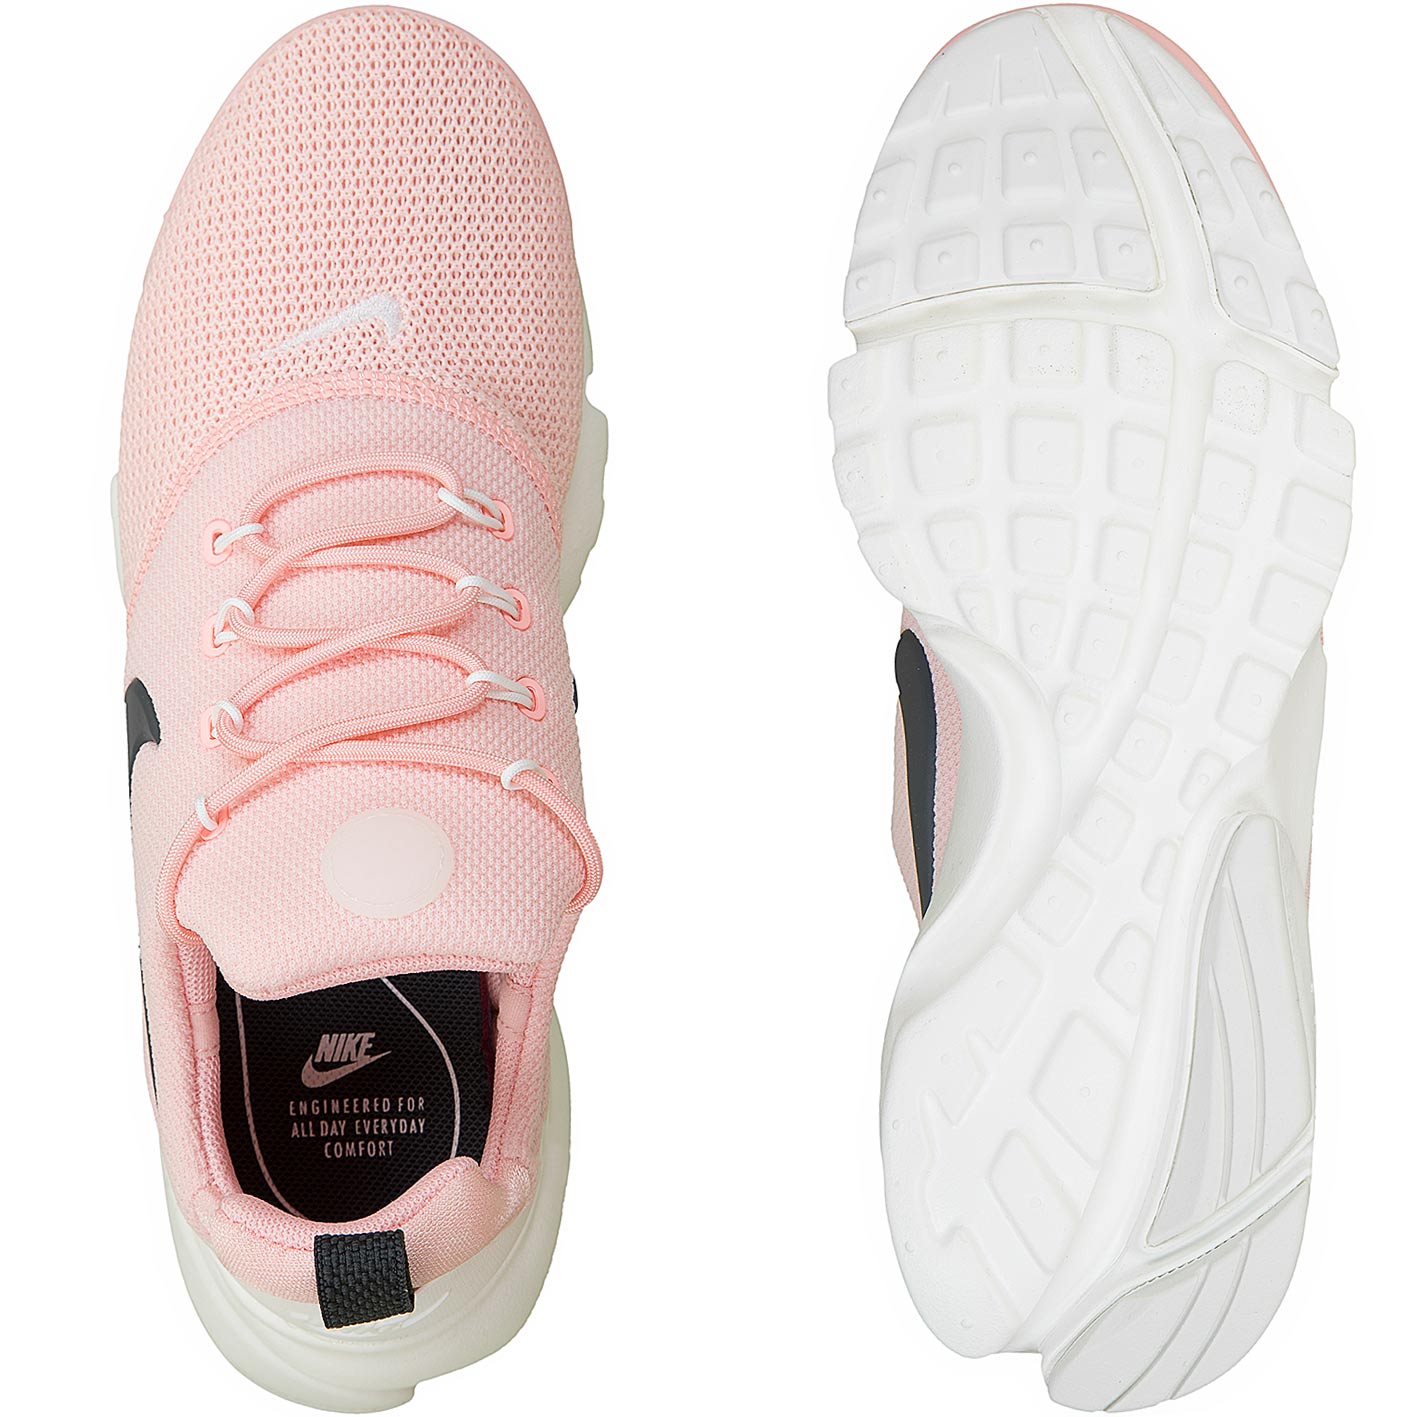 ☆ Nike Damen Sneaker Presto Fly pink/weiß - hier bestellen!